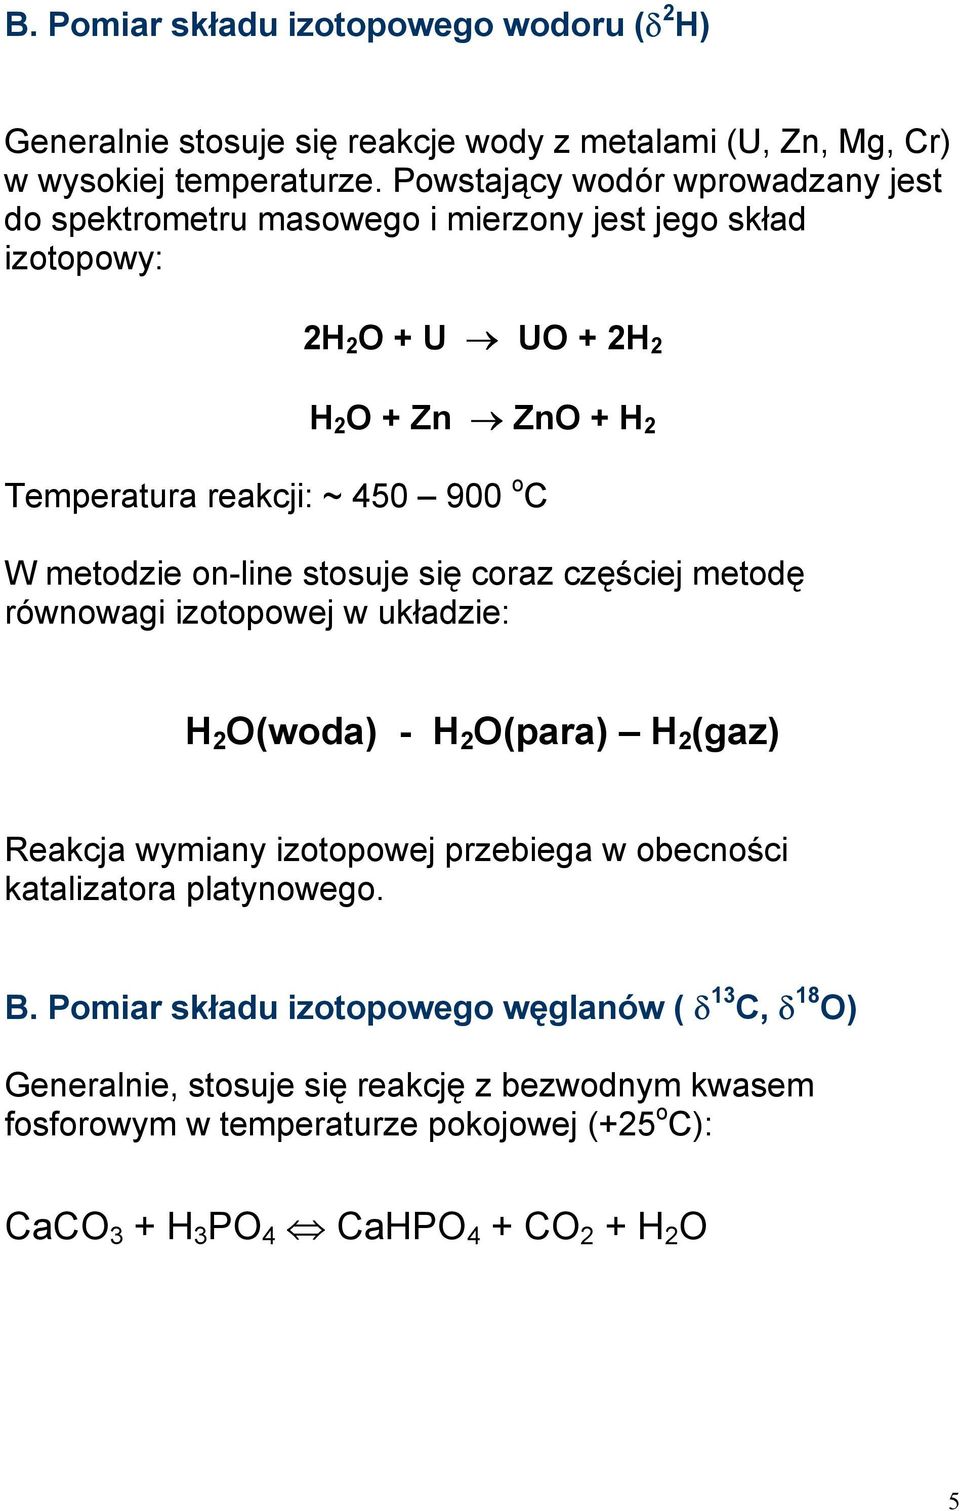 W metodzie on-line stosuje się coraz częściej metodę równowagi izotopowej w układzie: H 2 O(woda) - H 2 O(para) H 2 (gaz) Reakcja wymiany izotopowej przebiega w obecności